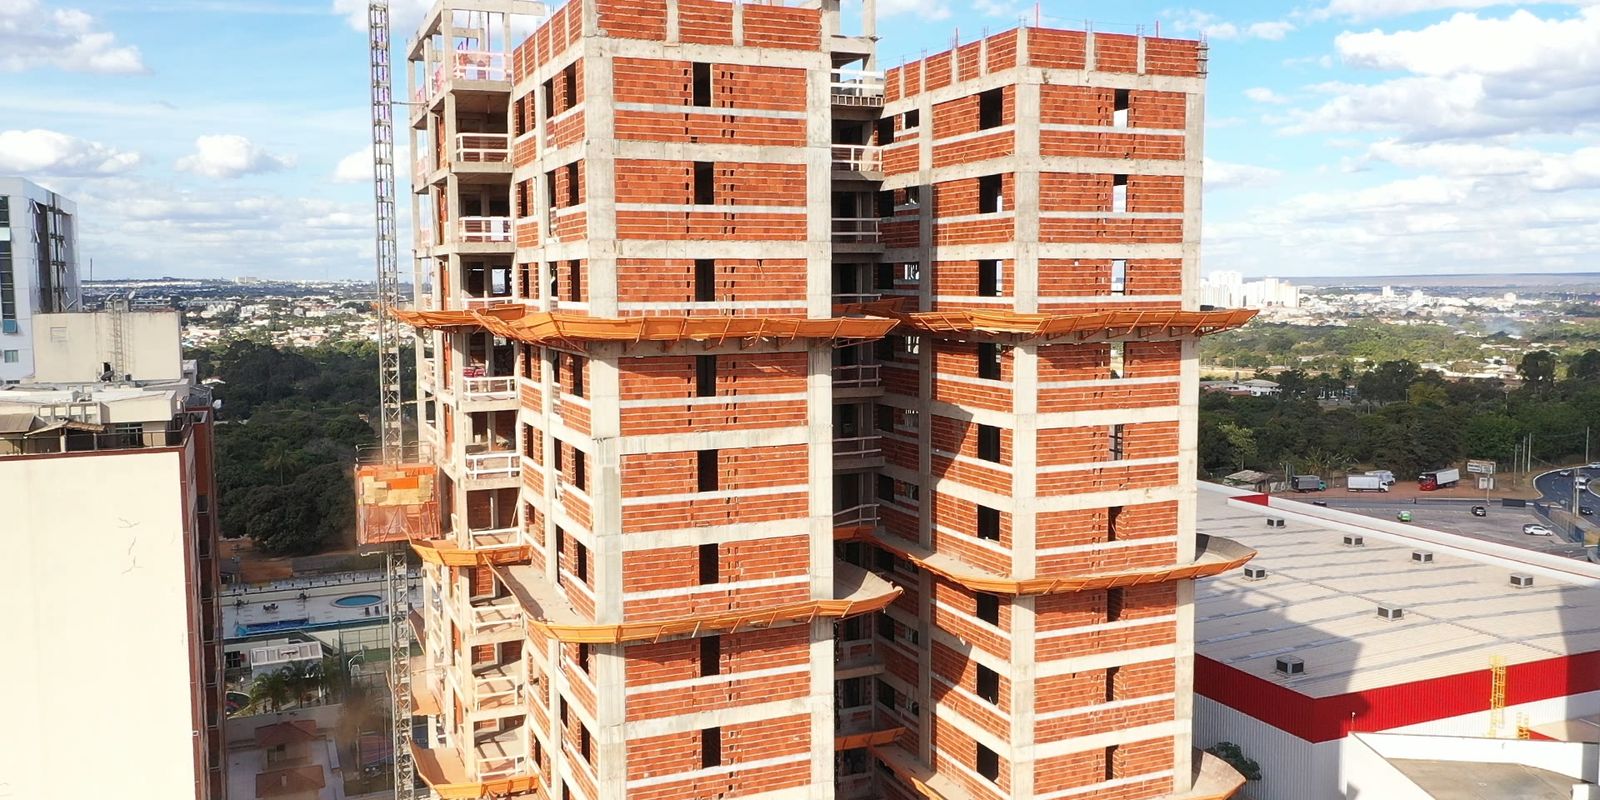 Confiança da construção civil recua 1,4 ponto em maio, diz FGV